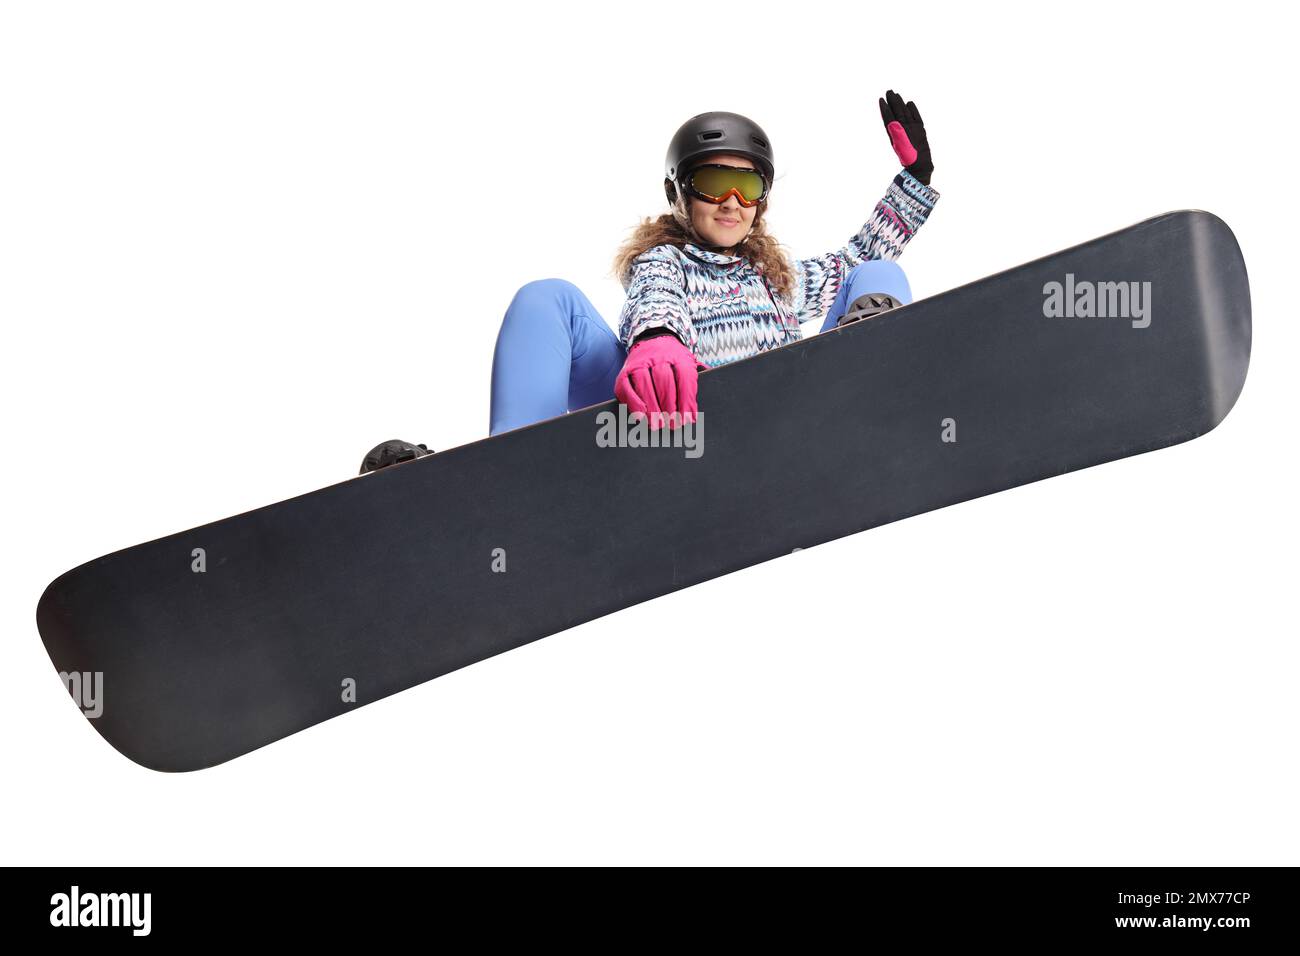 Eine Frau springt mit einem Snowboard, isoliert auf weißem Hintergrund Stockfoto